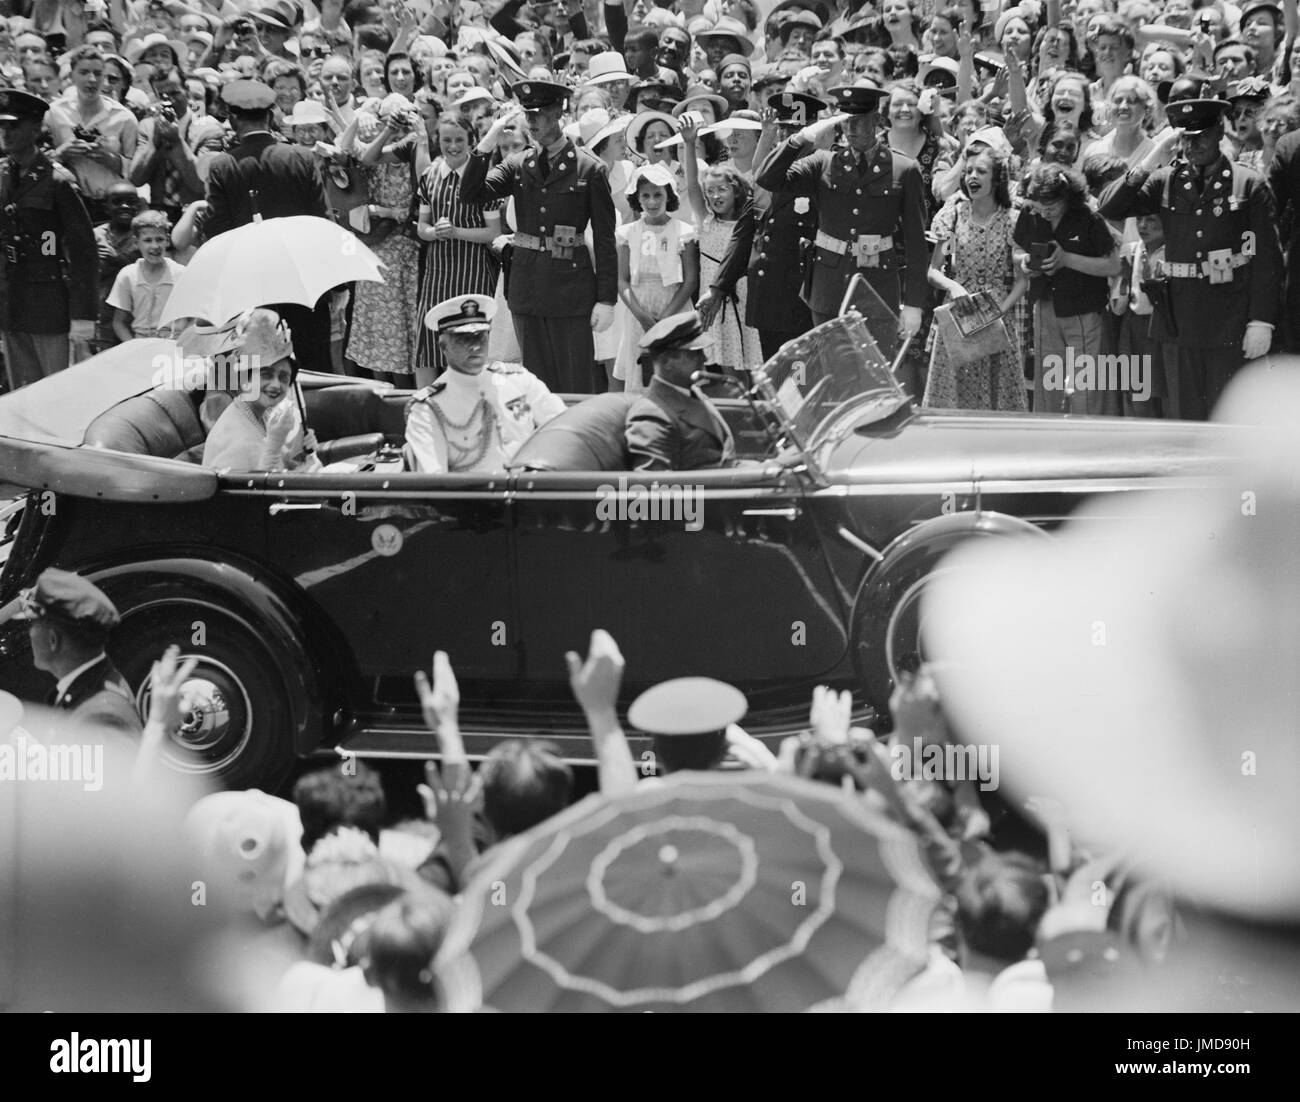 La regina Elisabetta in automobile, Washington DC, Stati Uniti d'America, Harris & Ewing, Giugno 1939 Foto Stock